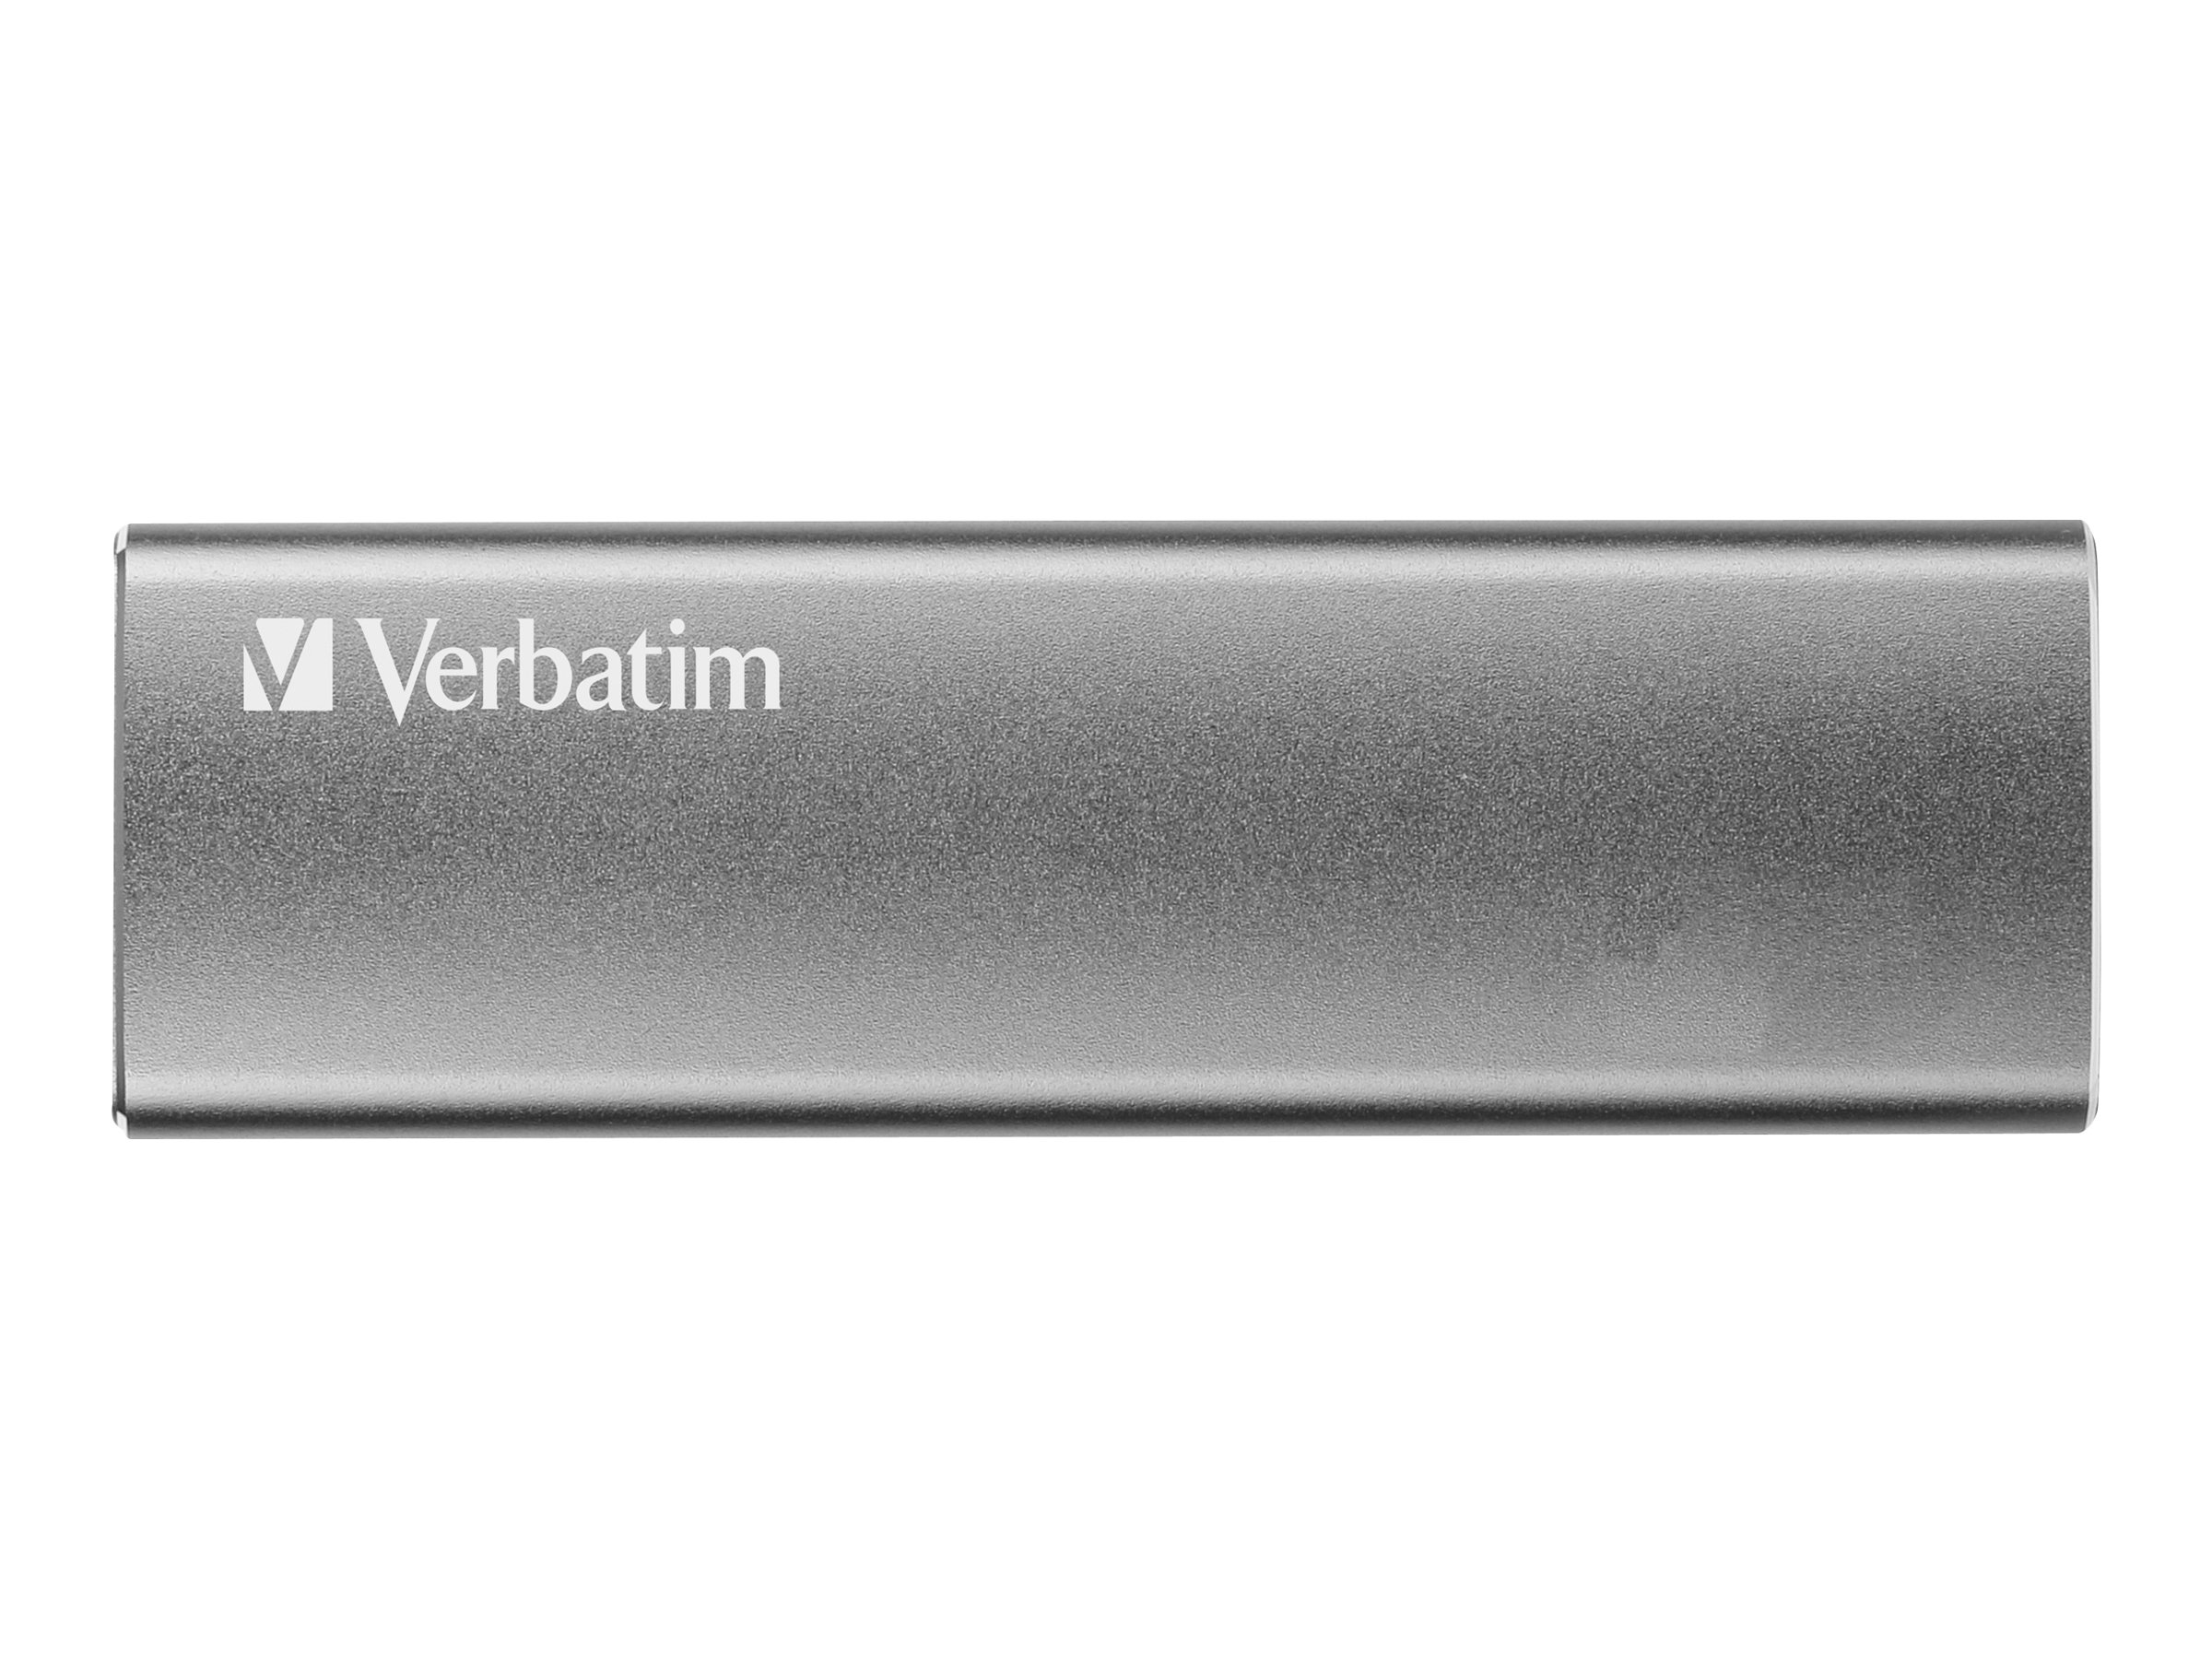 Silber 47441 SSD, SSD, 500 120GB VERBATIM extern, VX GB 120